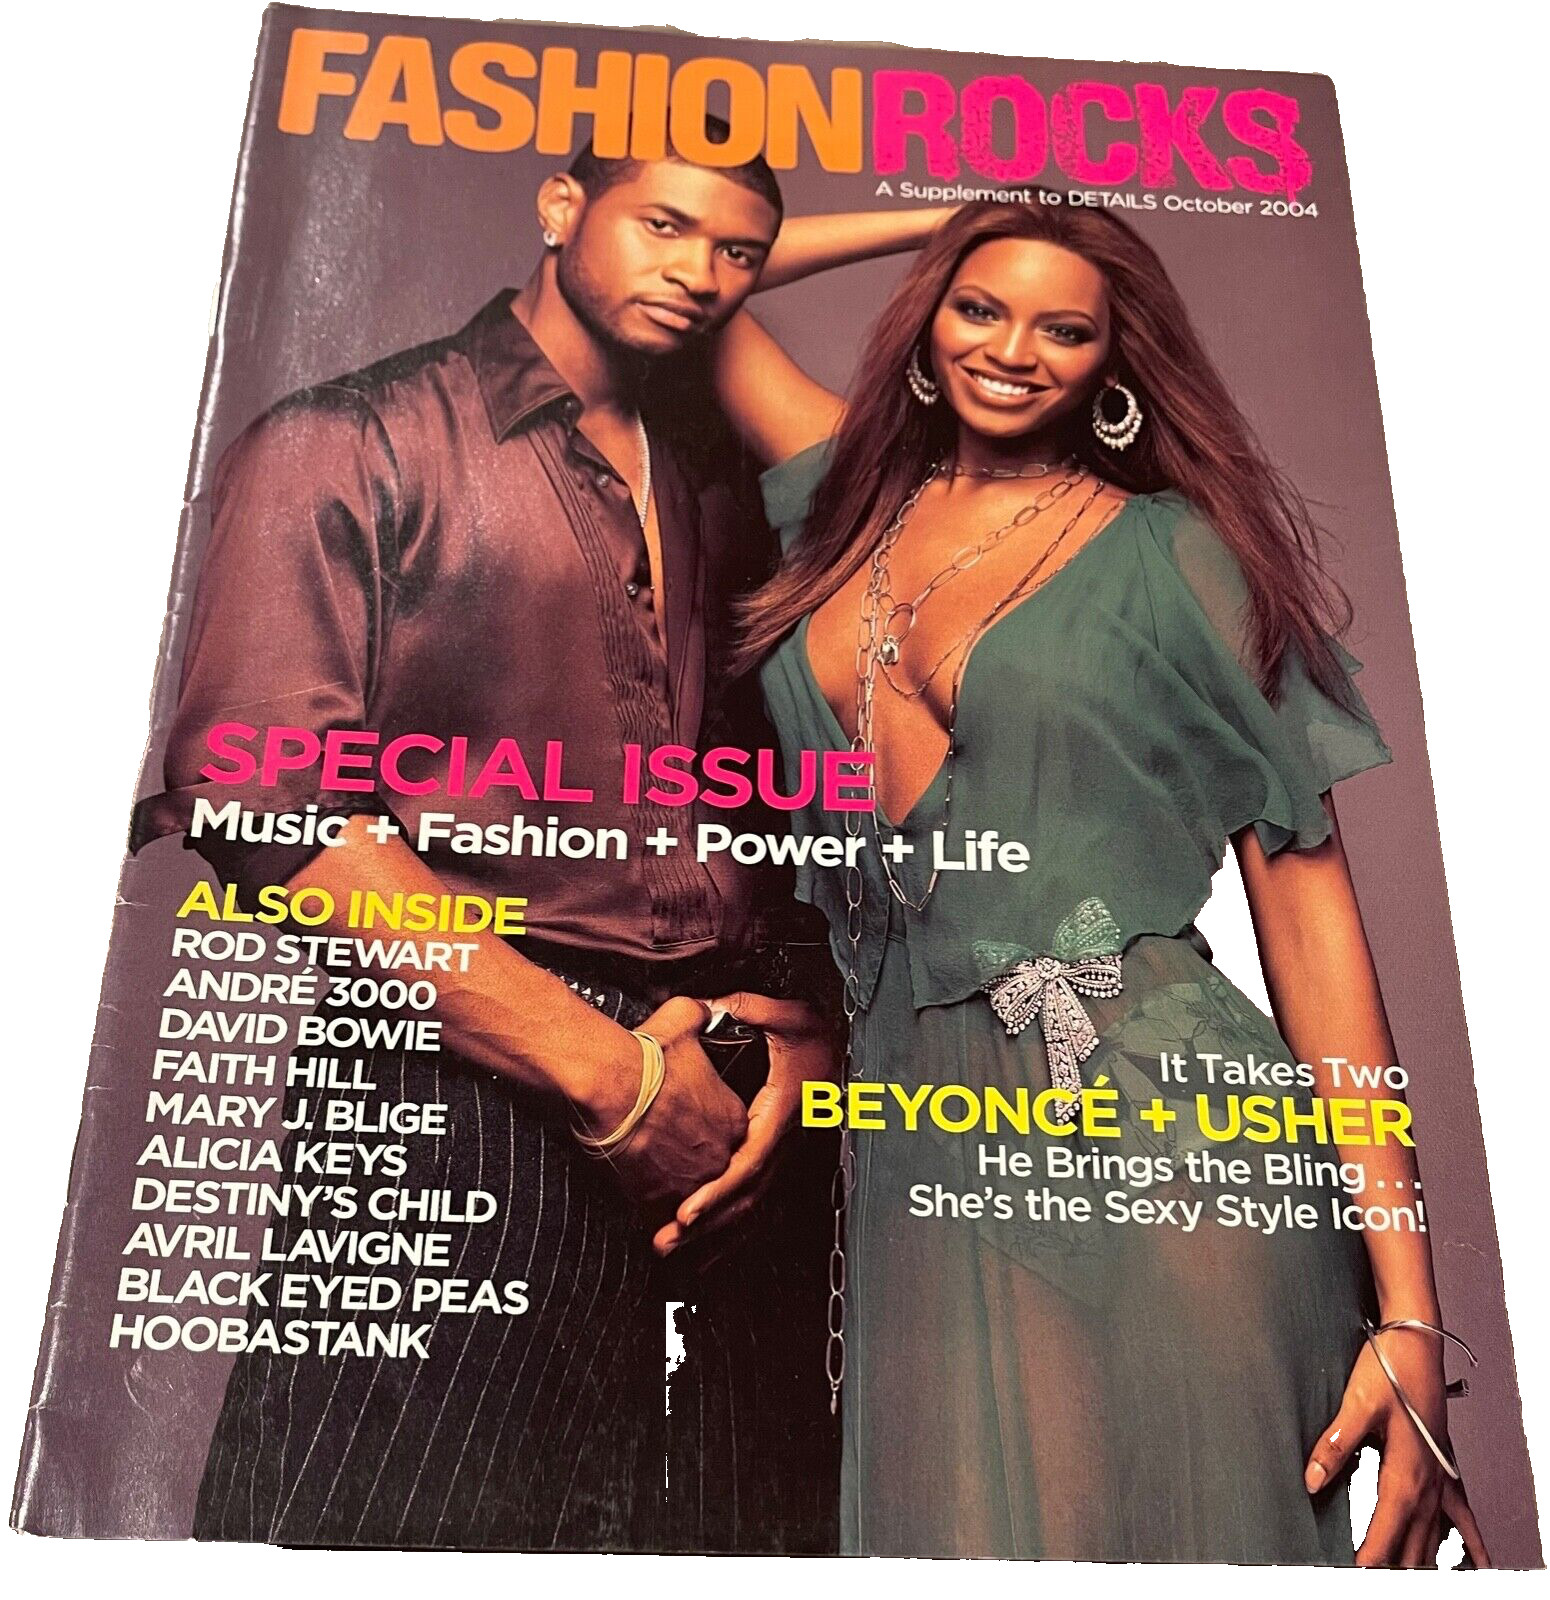 October 2004 Details Supplement Fashion Rocks Beyonce & Usher Cover